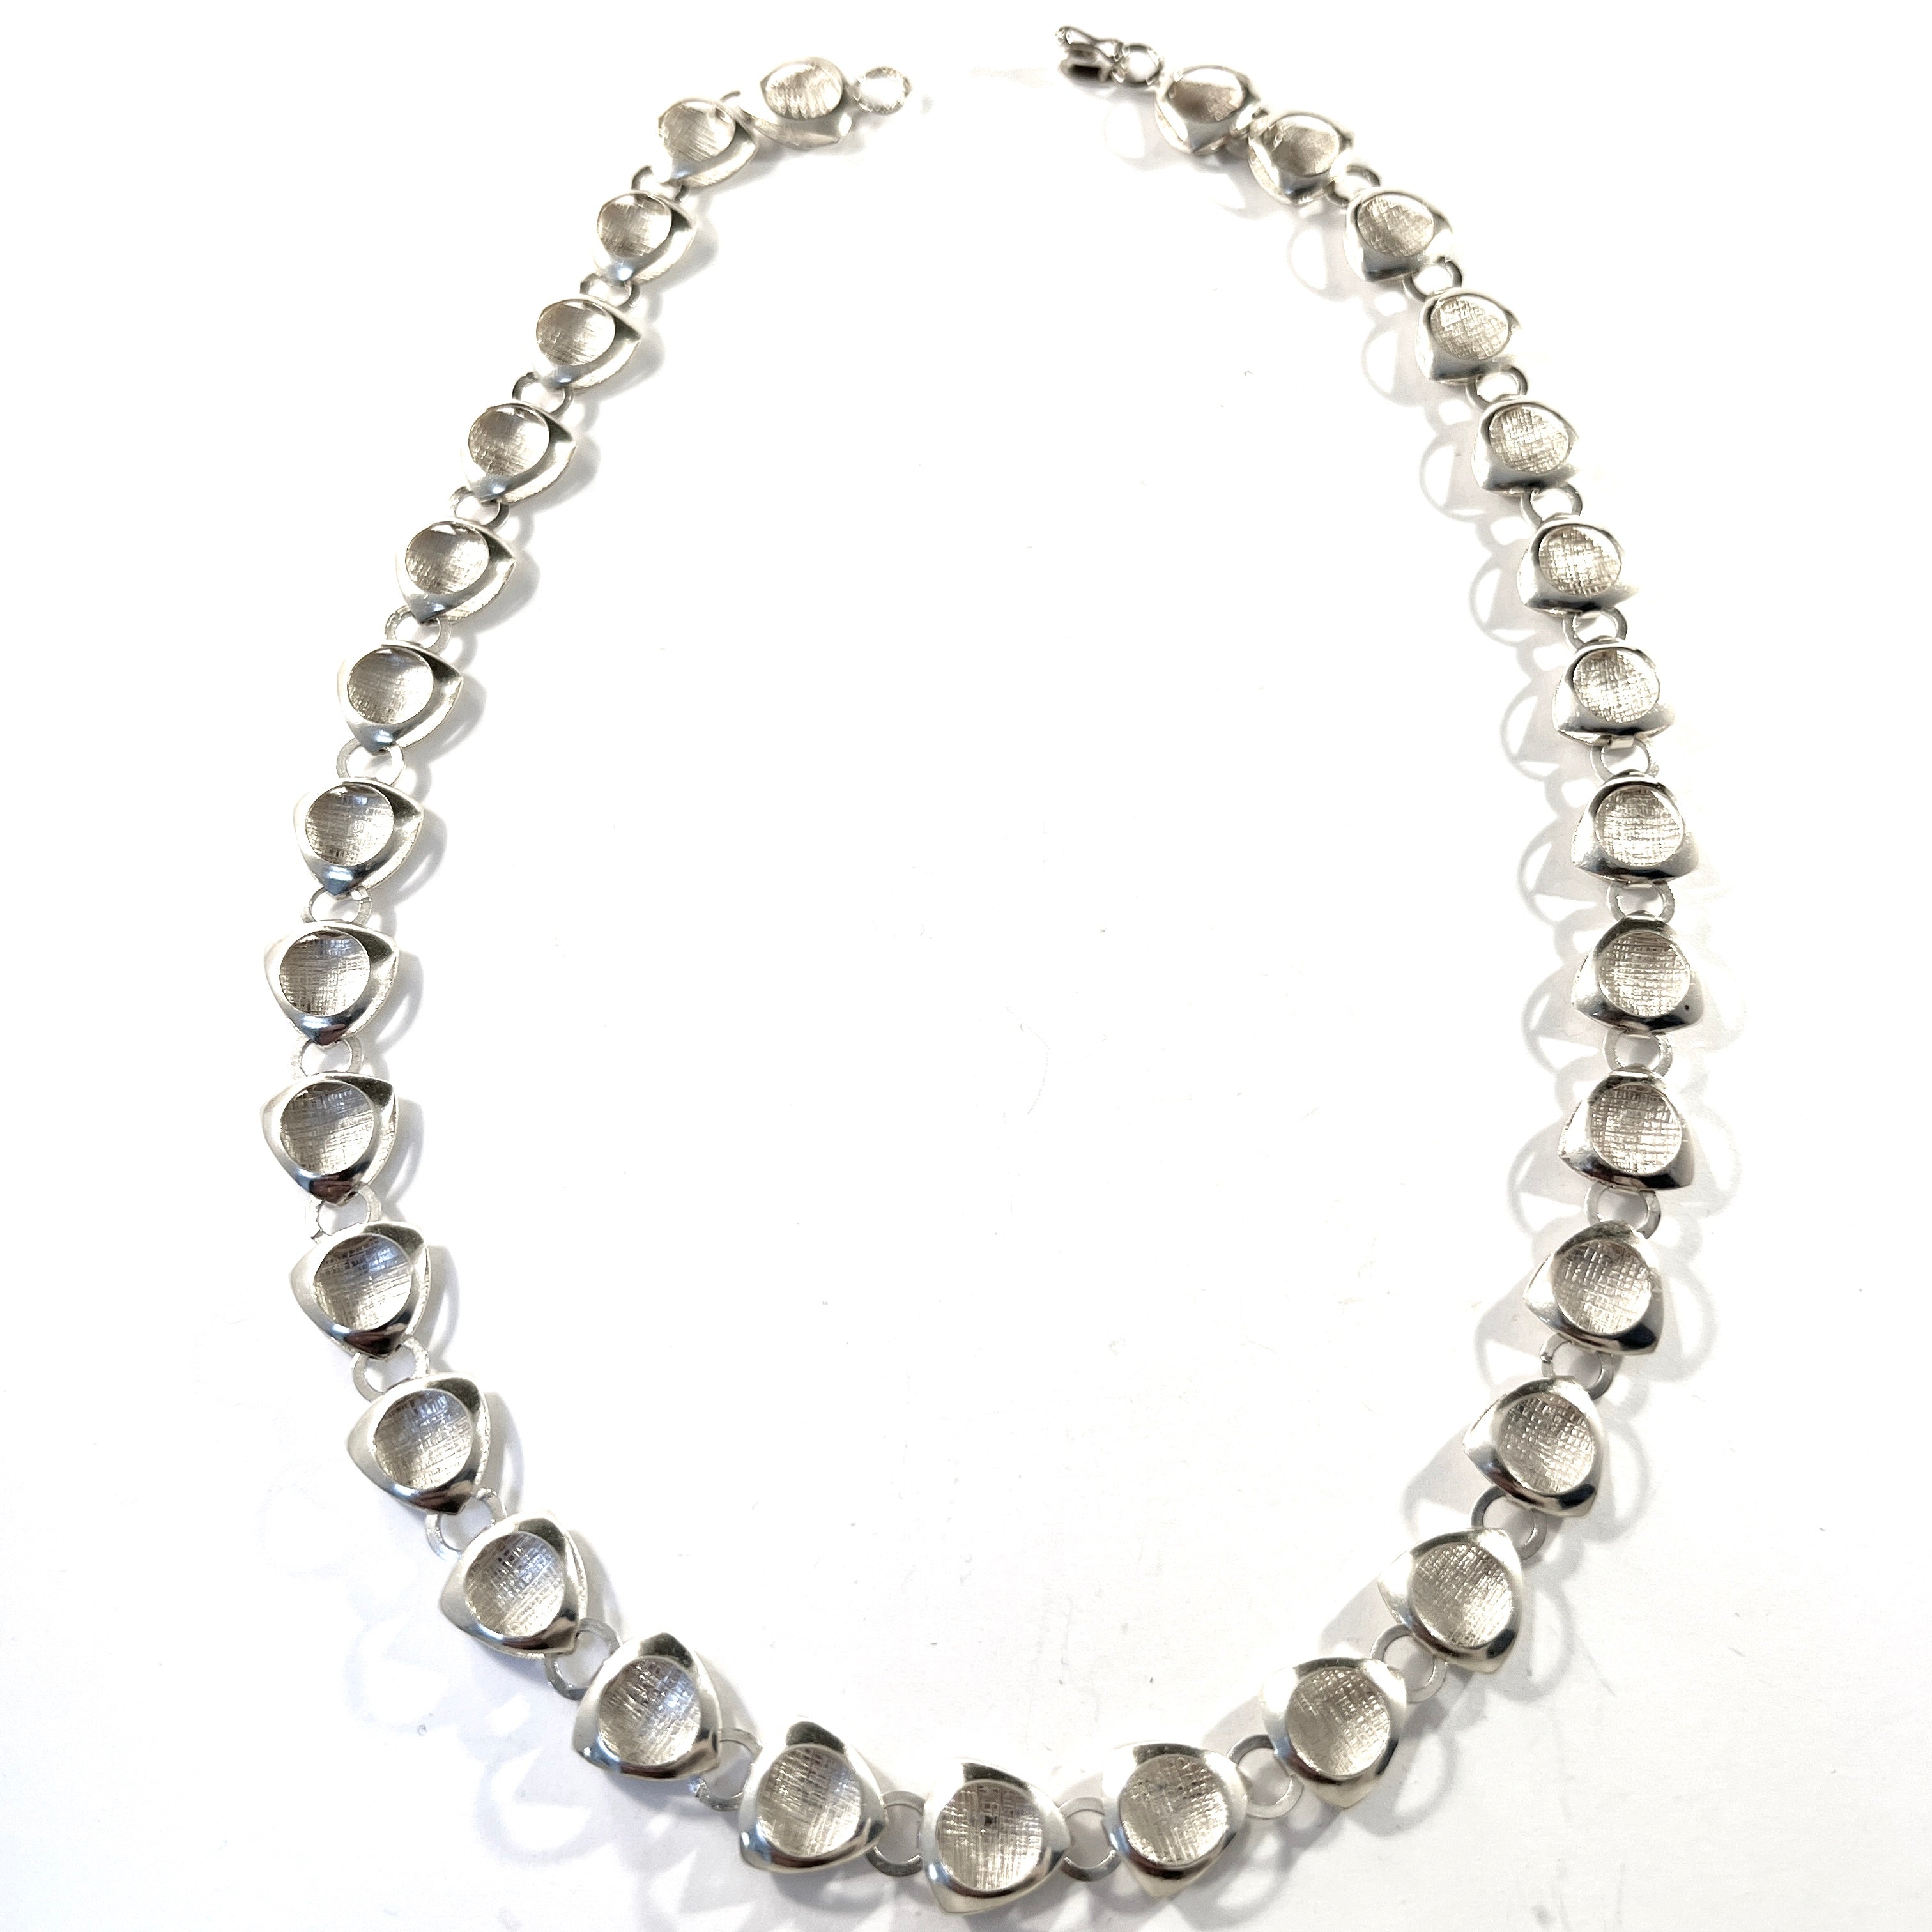 Einari Ailio, Finland 1960-70s. Sterling Silver Necklace.